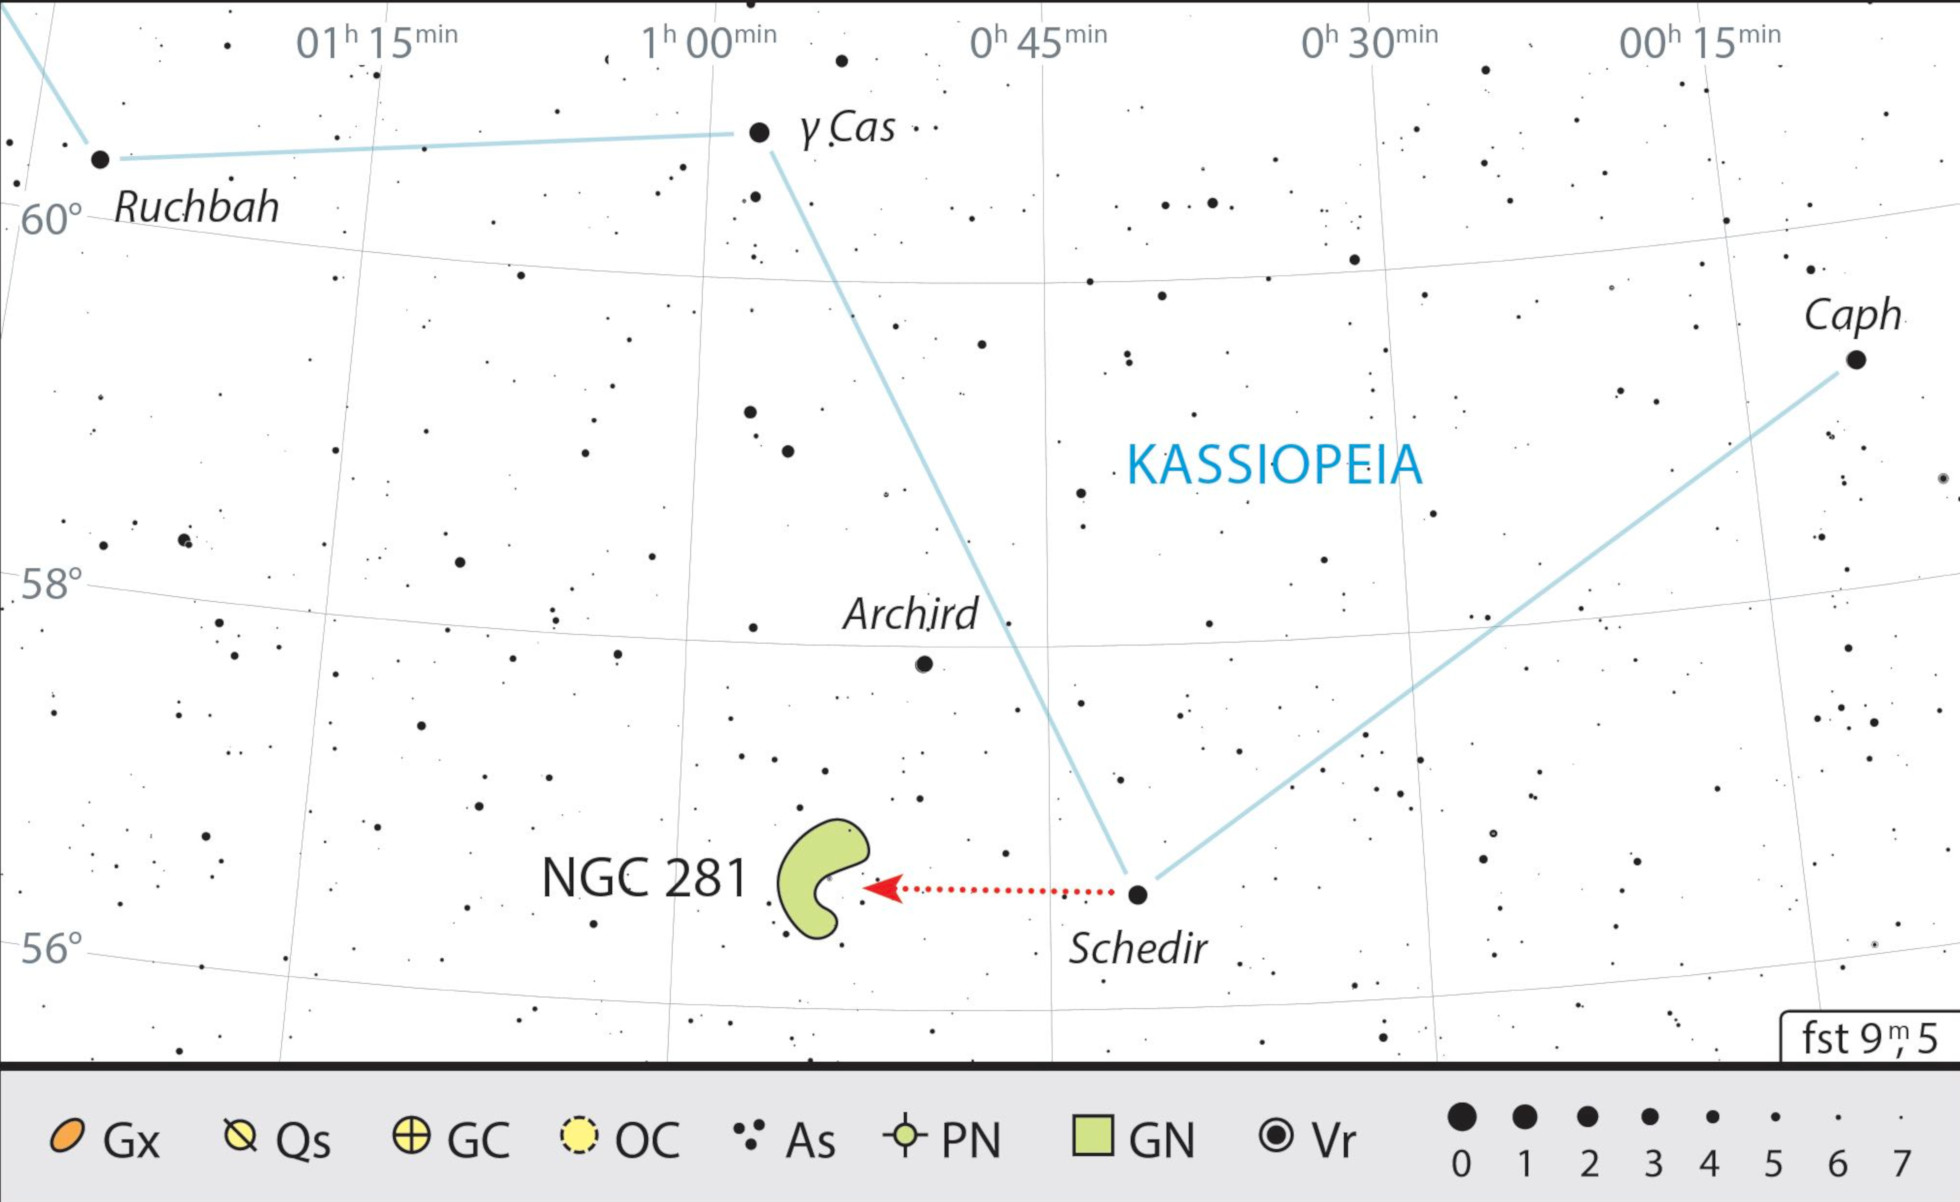 Mgławica Pacman leży bardzo blisko α Cas (Schedir), jednej z najjaśniejszych gwiazd Kasjopei. J. Scholten